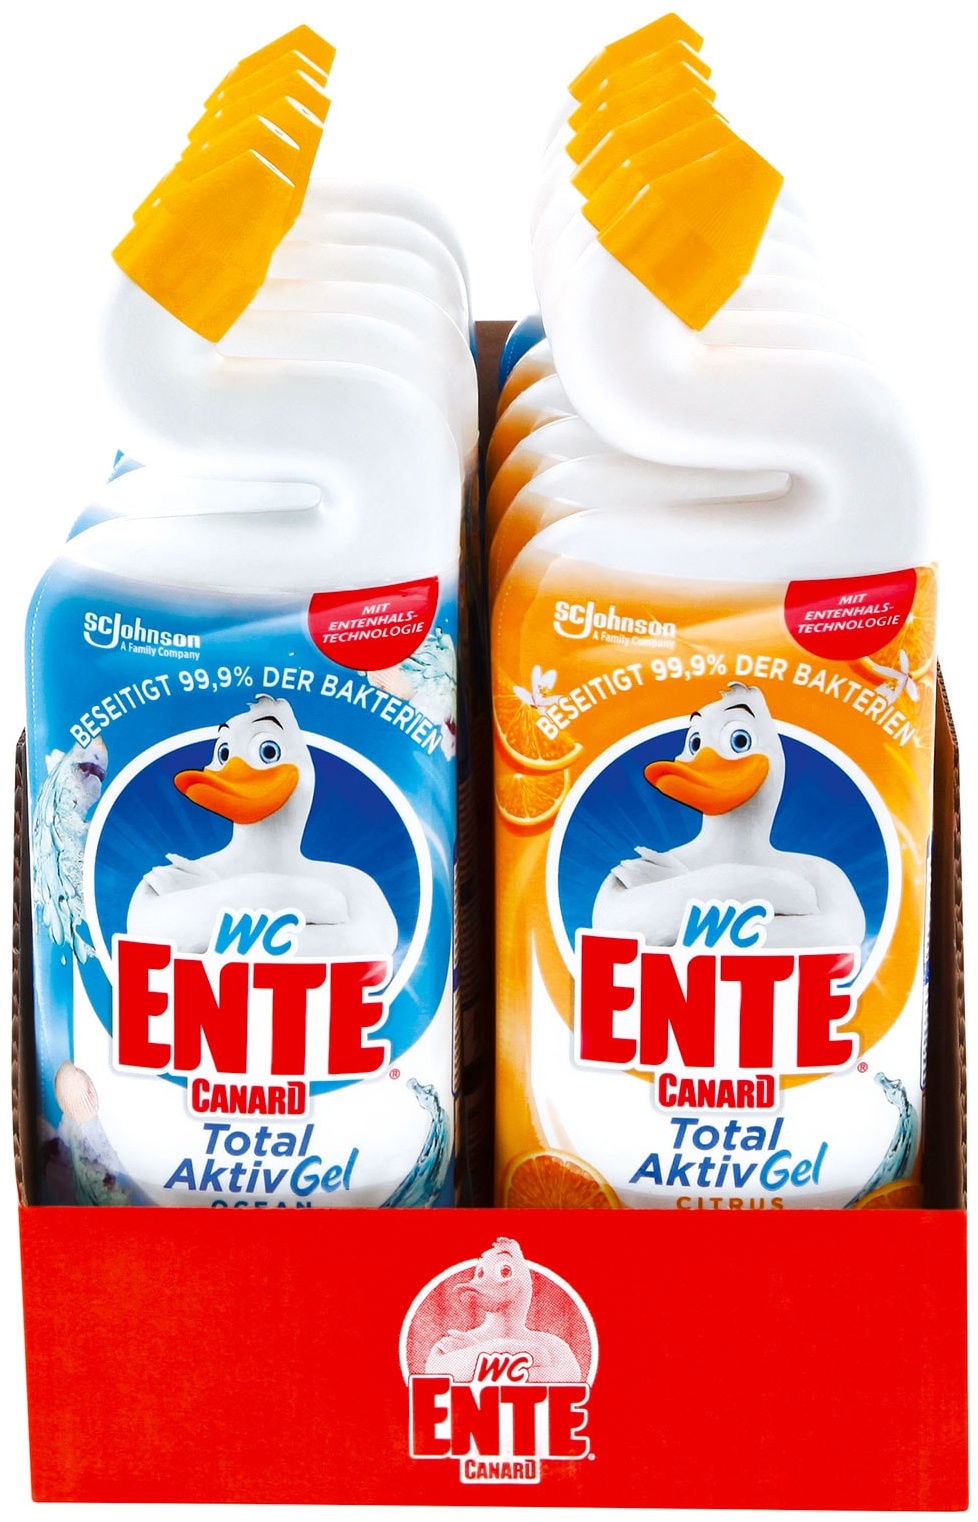 WC-Ente Total Aktiv Gel flüssiger WC-Reiniger 750 ml, verschiedene Sorten, 12er Pack